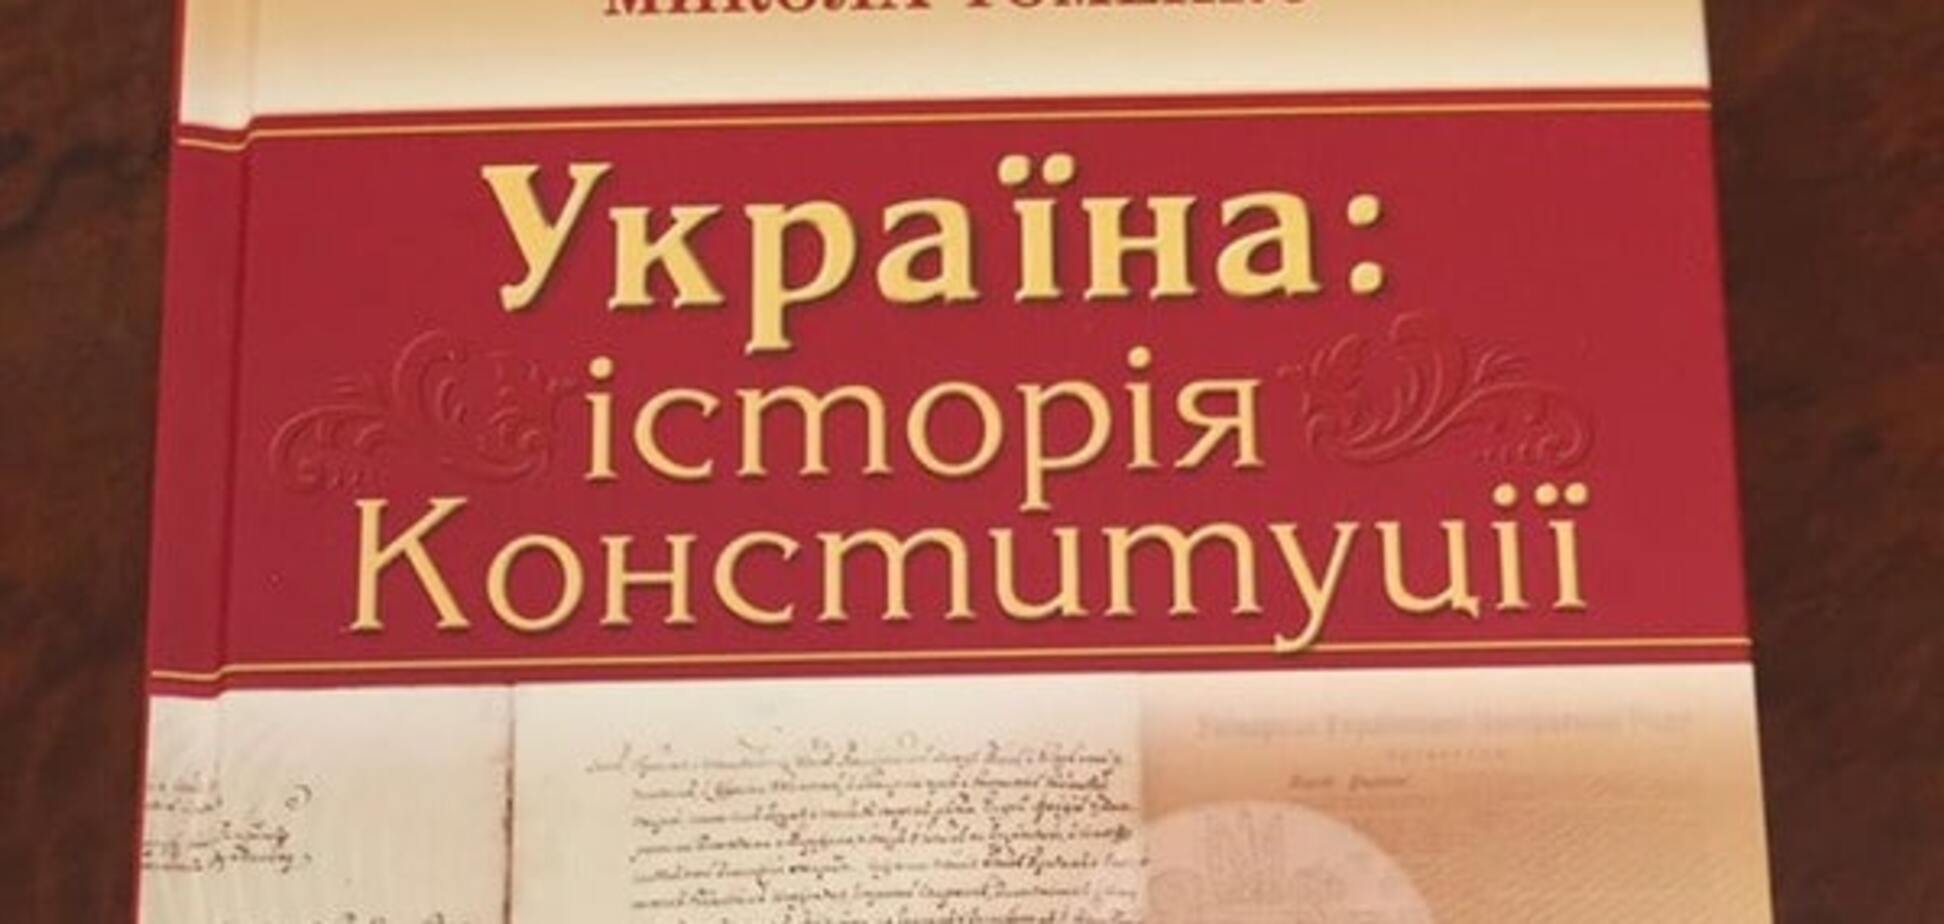 В Киеве презентовали учебник по Конституции Украины от Томенко